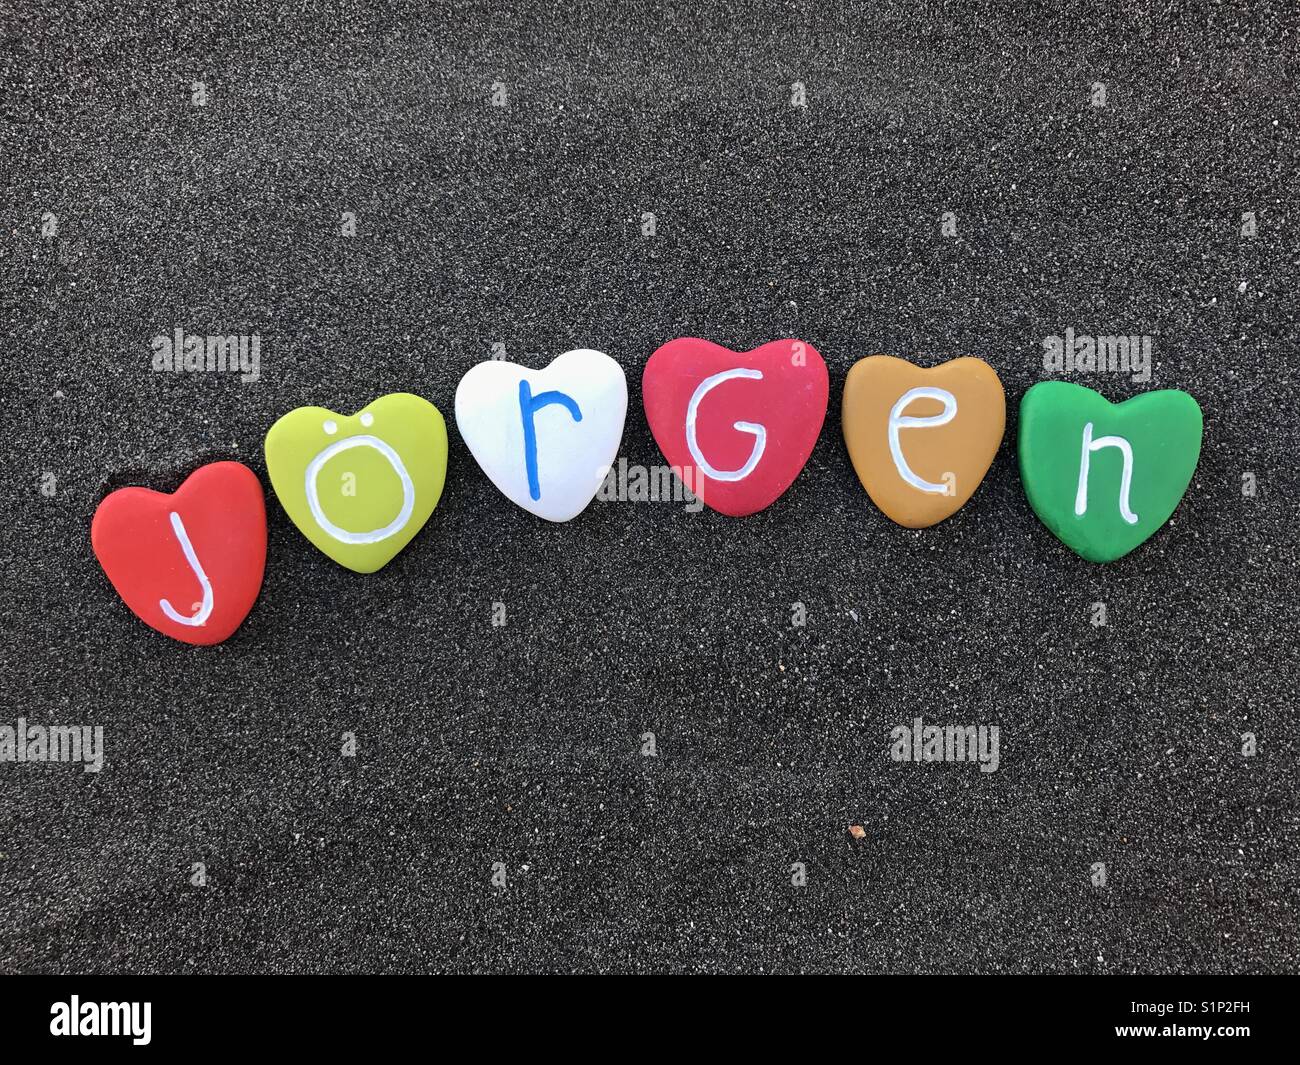 Jörgen, nombre masculino con piedras de color sobre arena volcánica negra Foto de stock